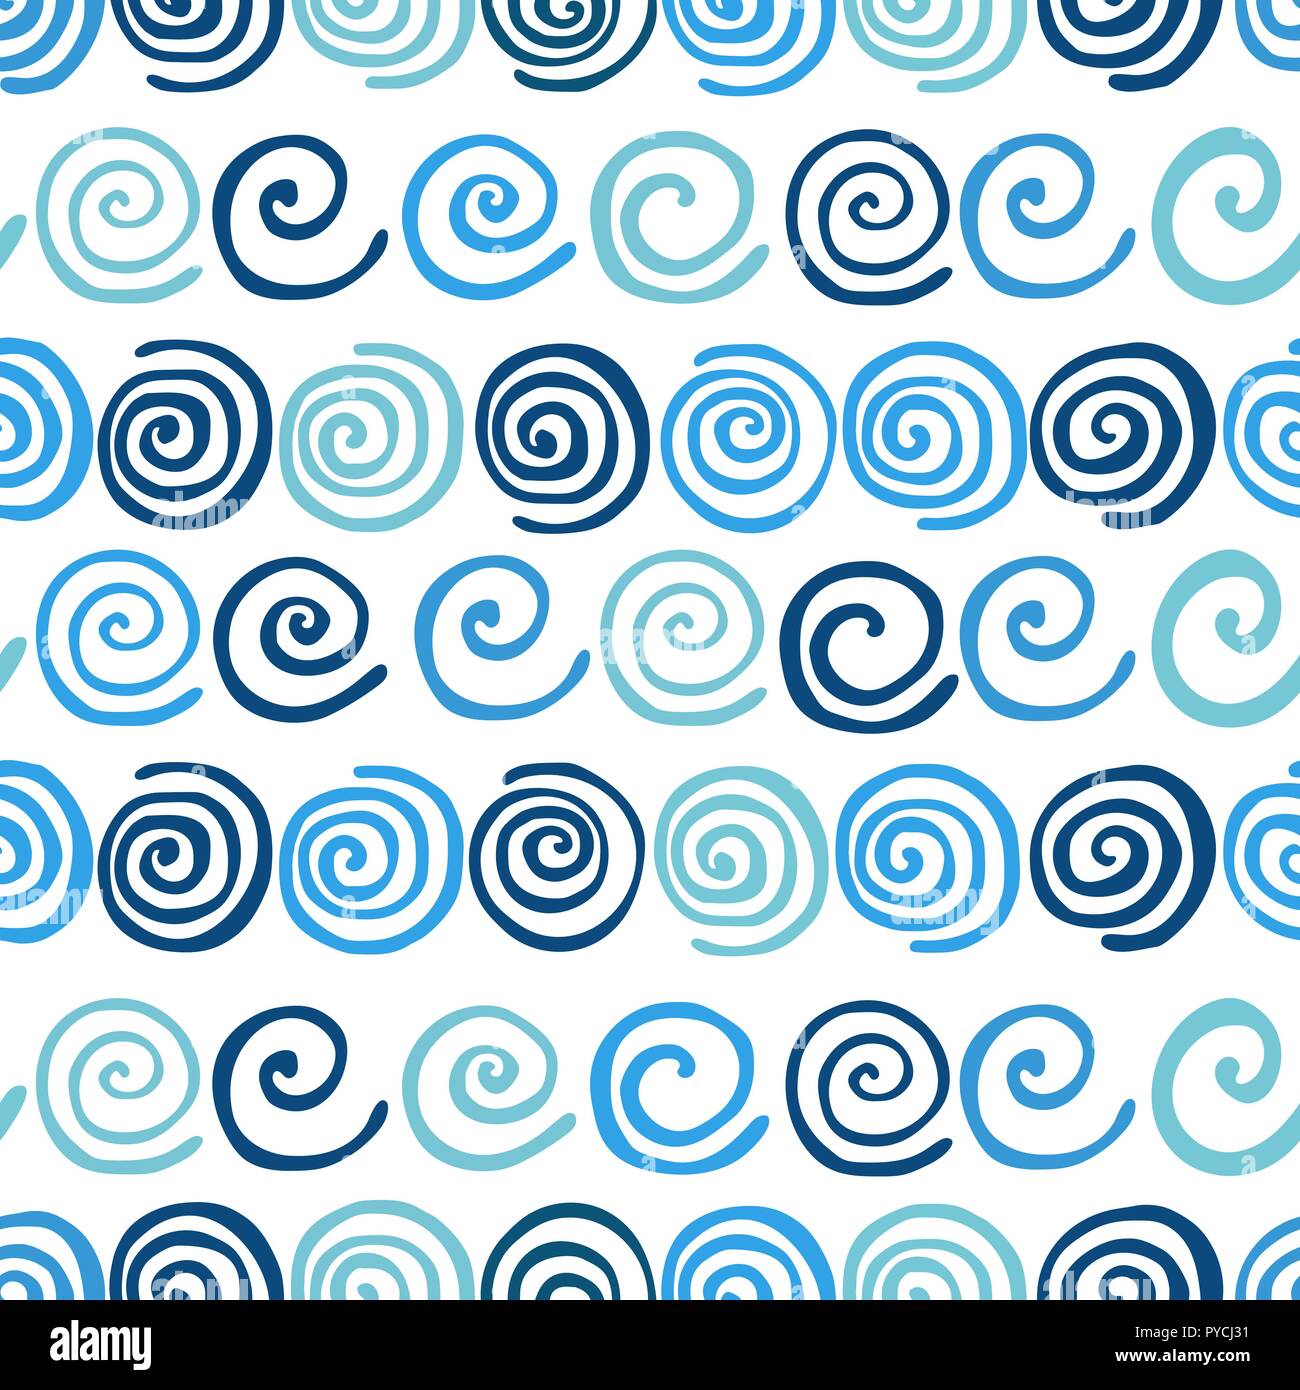 Blue Summer Waves seamless pattern. Acqua di mare vorticosamente su sfondo bianco. Carino doodle pattern per la progettazione. Illustrazione Vettoriale